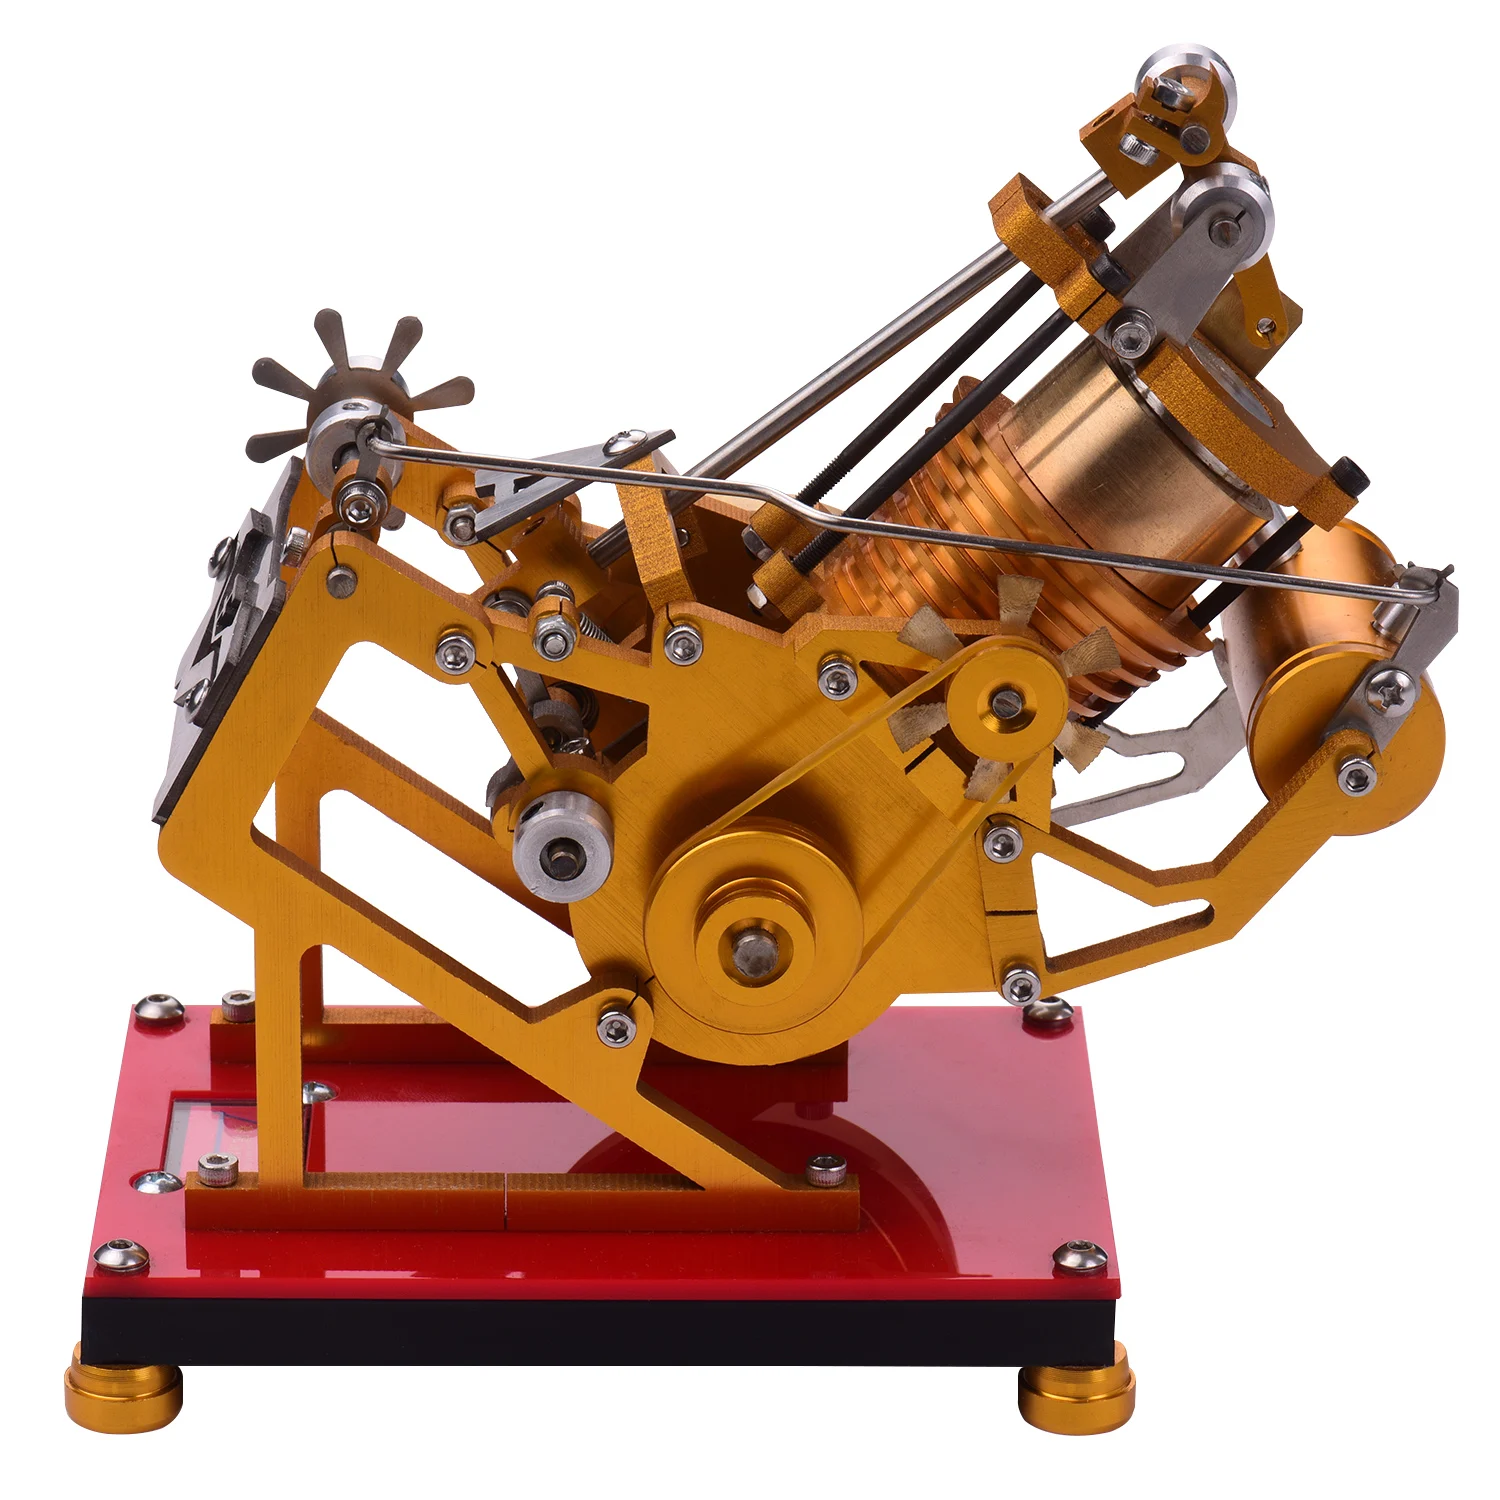 Горячая воздушная Модель двигателя Стирлинга, развивающая игрушка, обучающие средства, физика, научный эксперимент для учителя, студента, взрослого